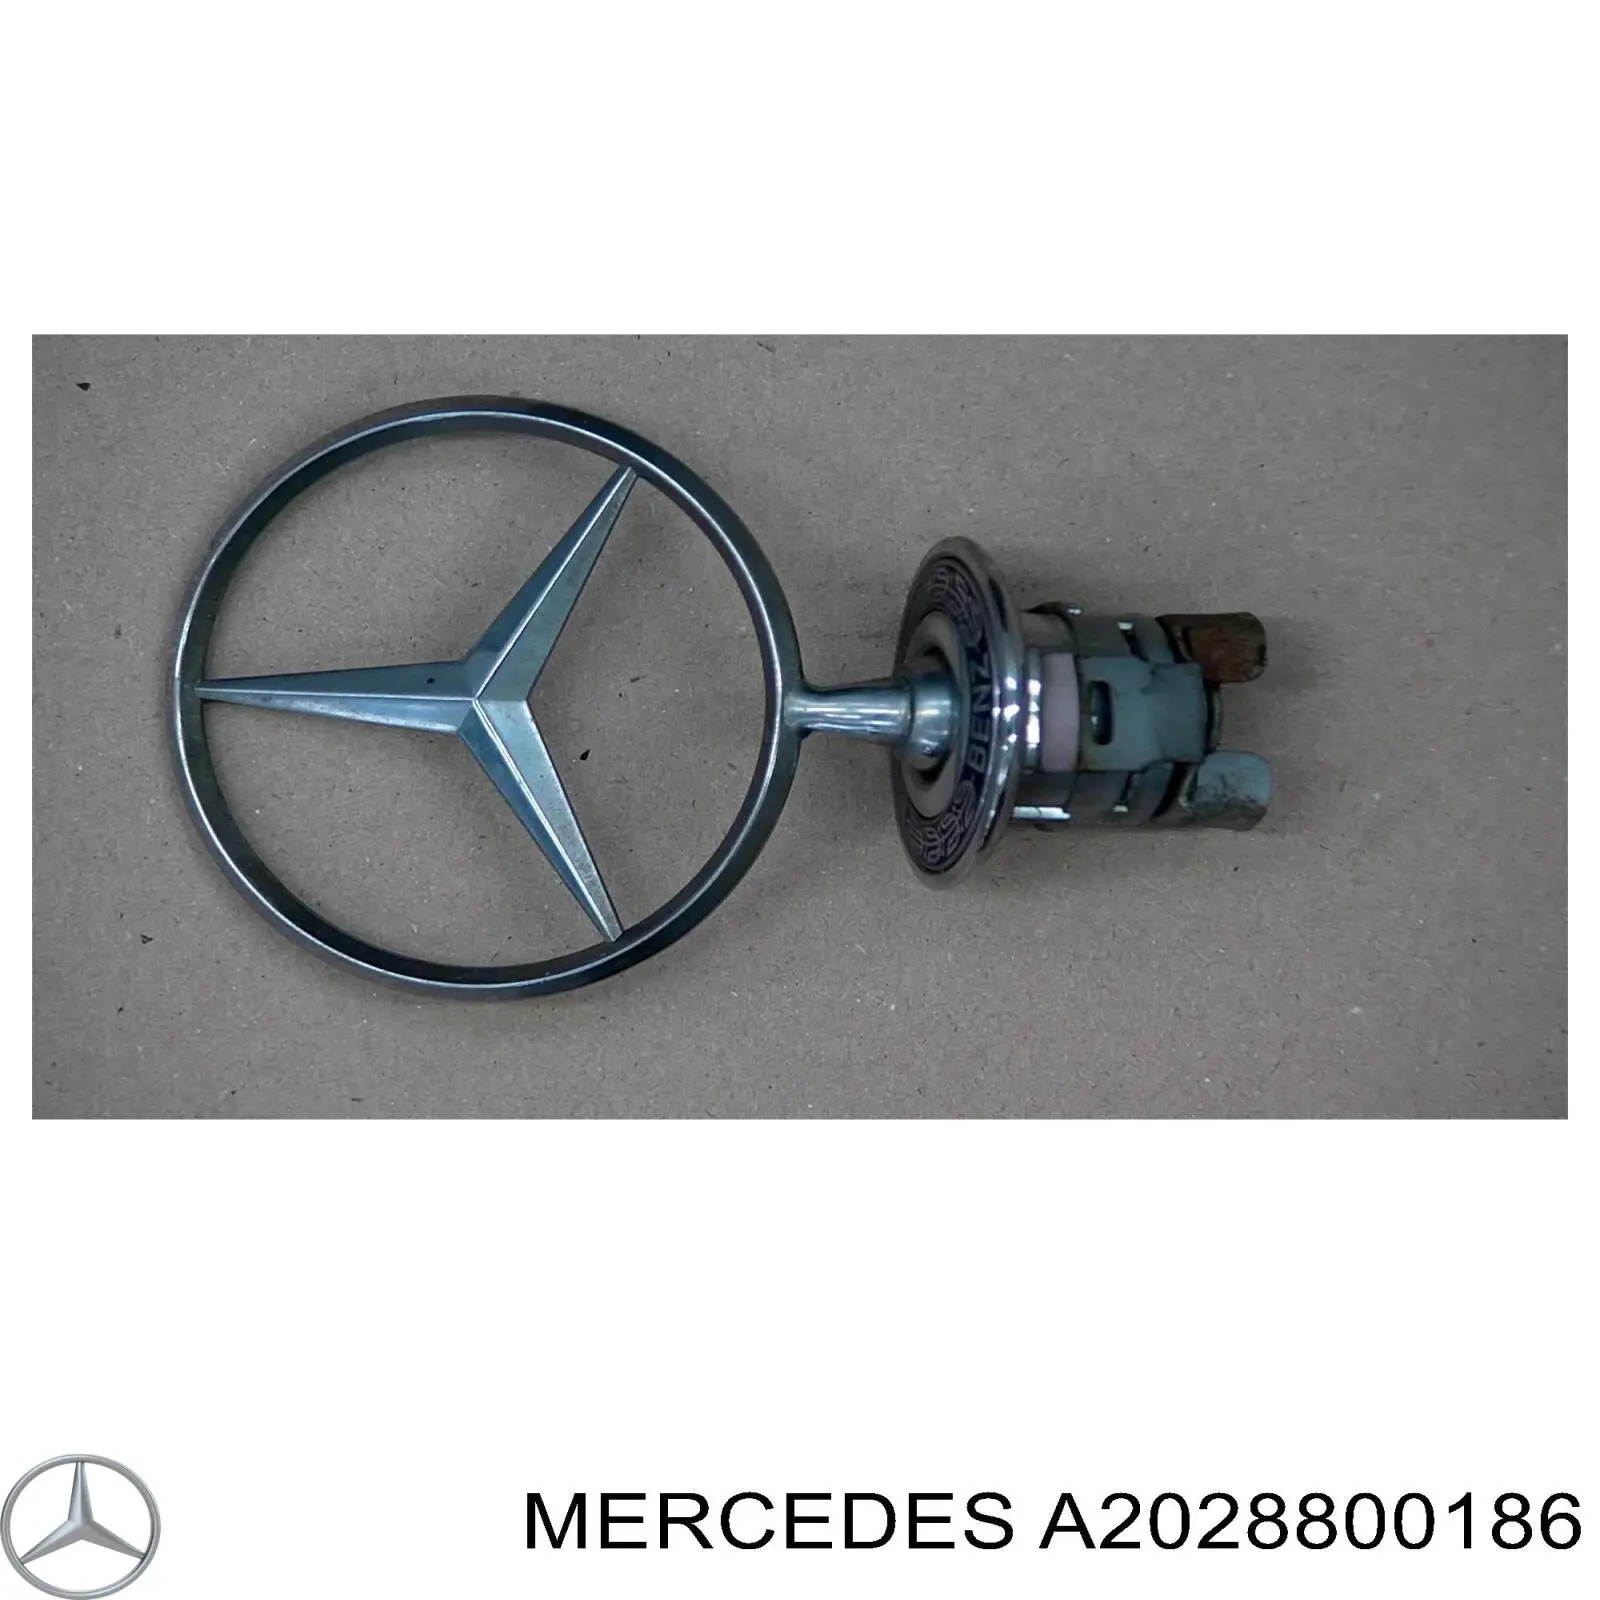 A2028800186 Mercedes emblema da capota